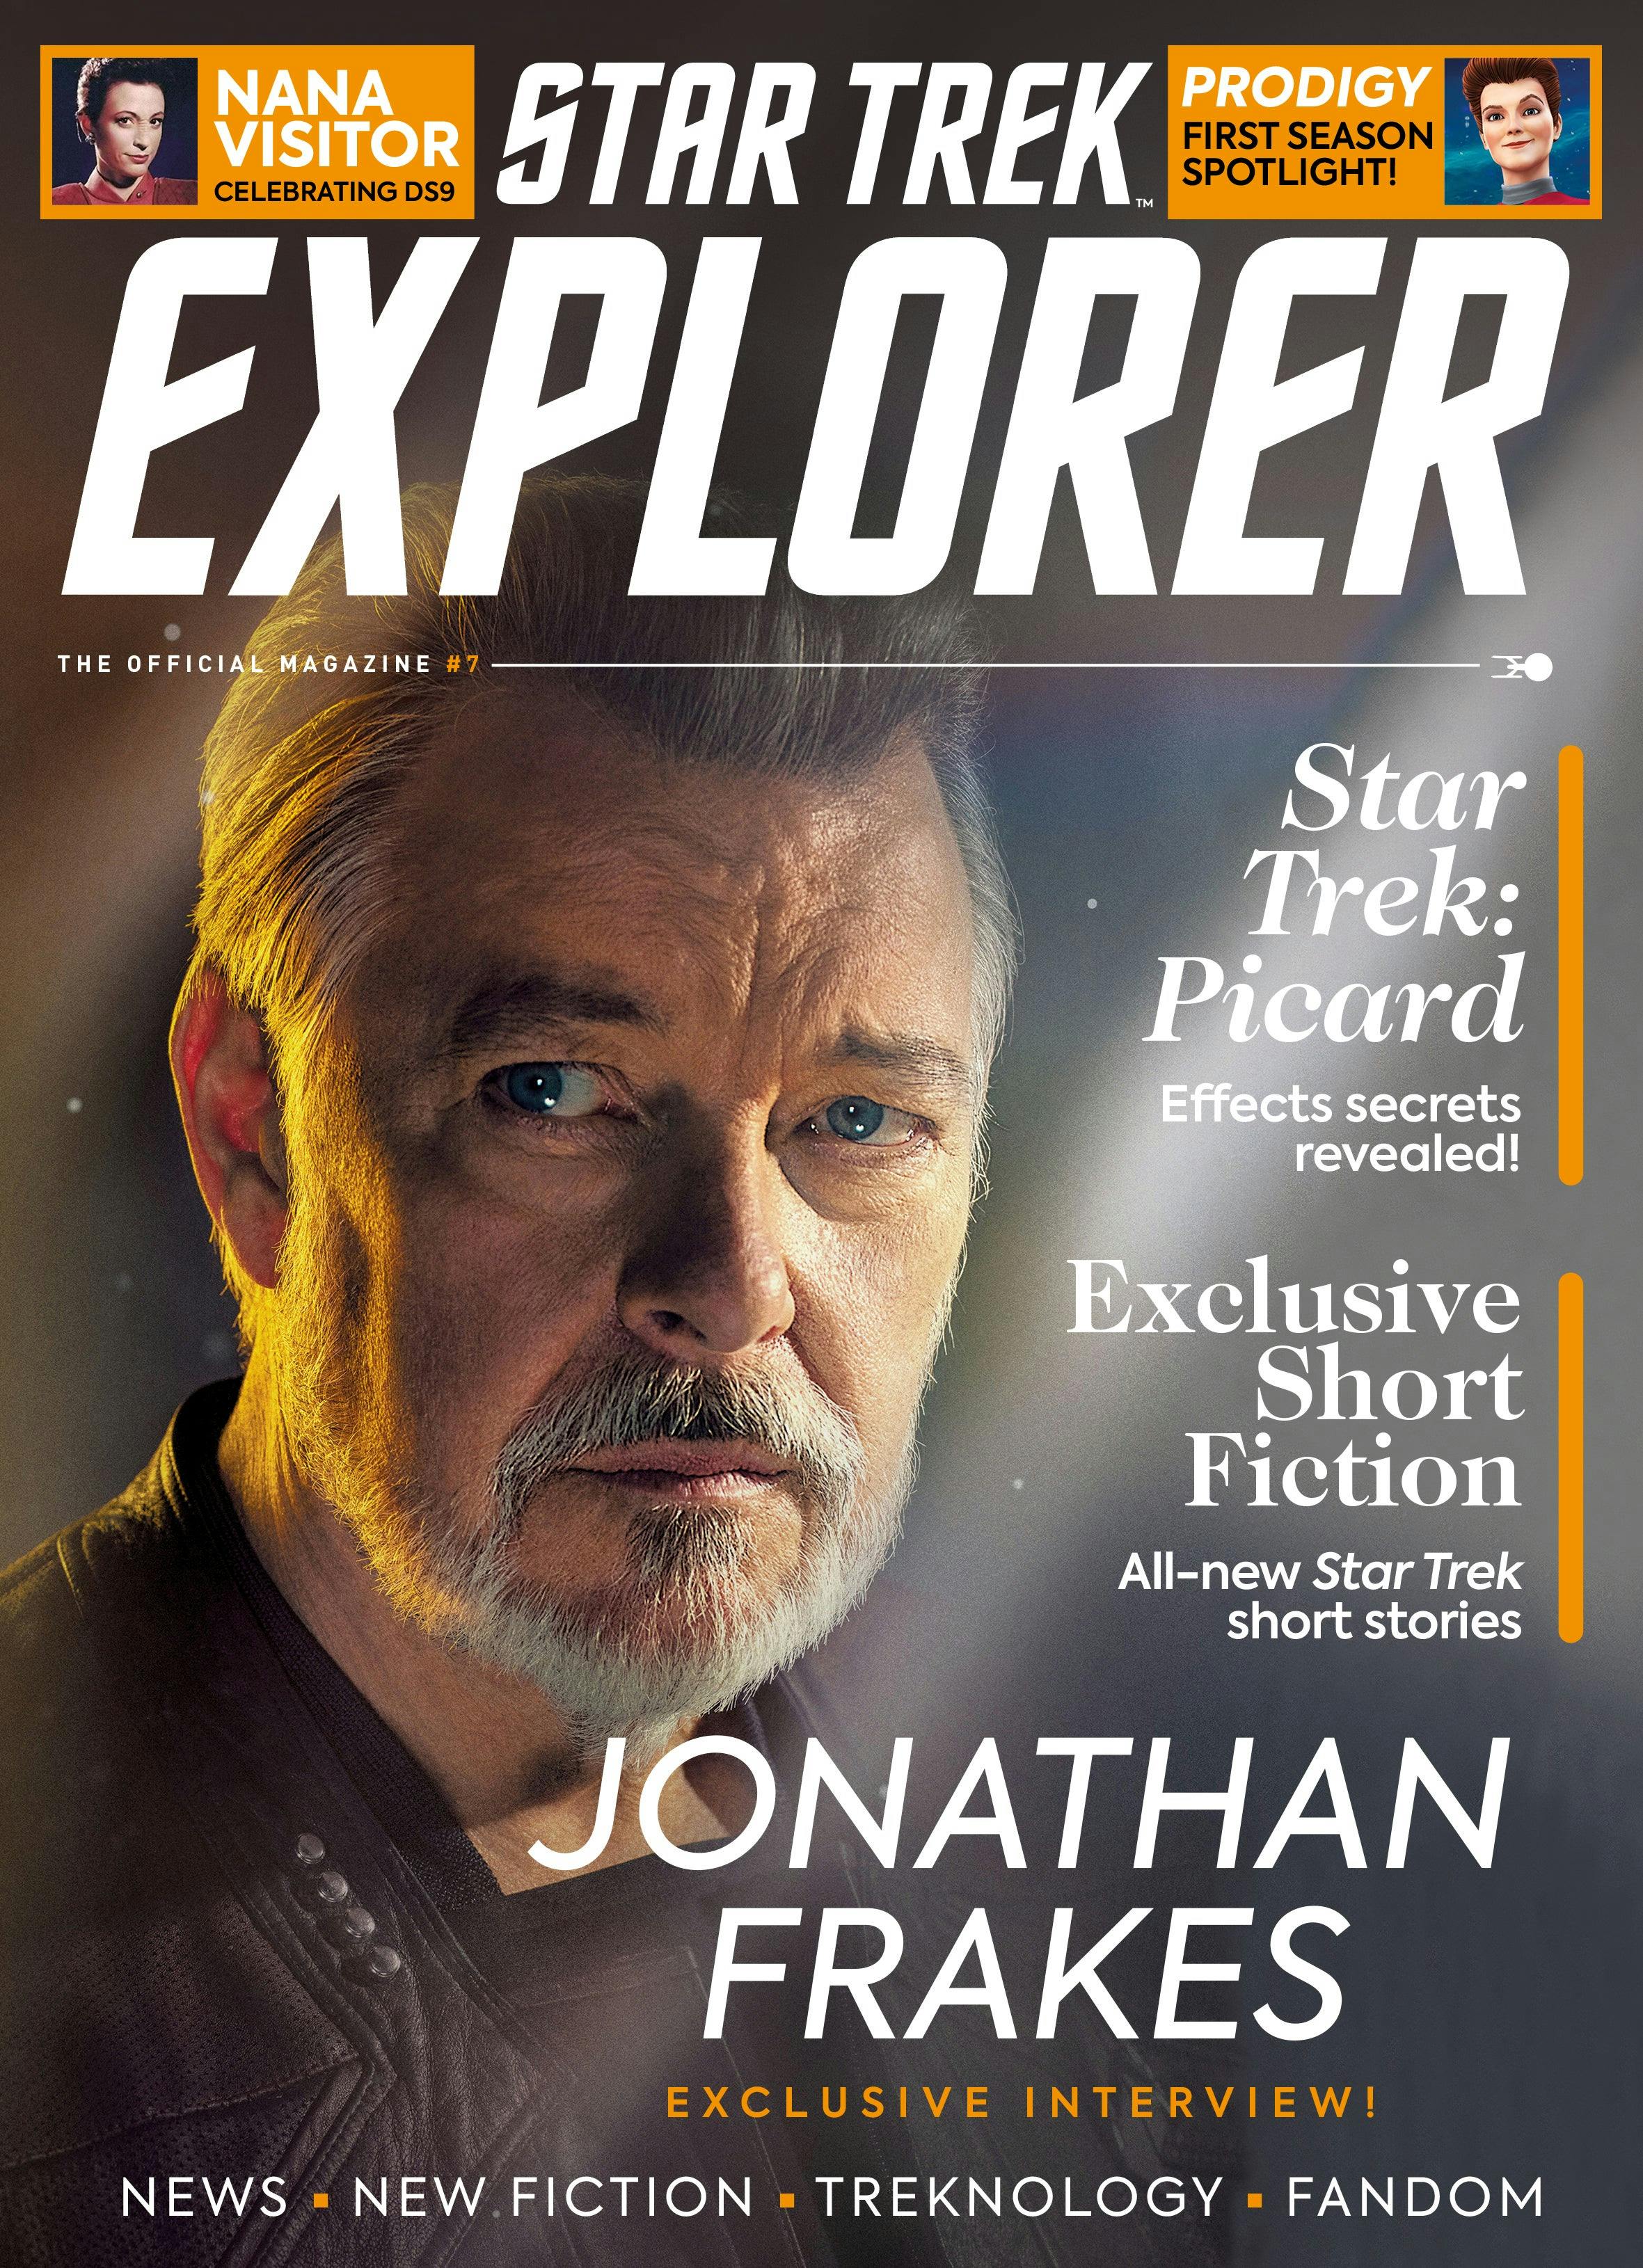 Star Trek Explorer #7 cover featuring Jonathan Frakes